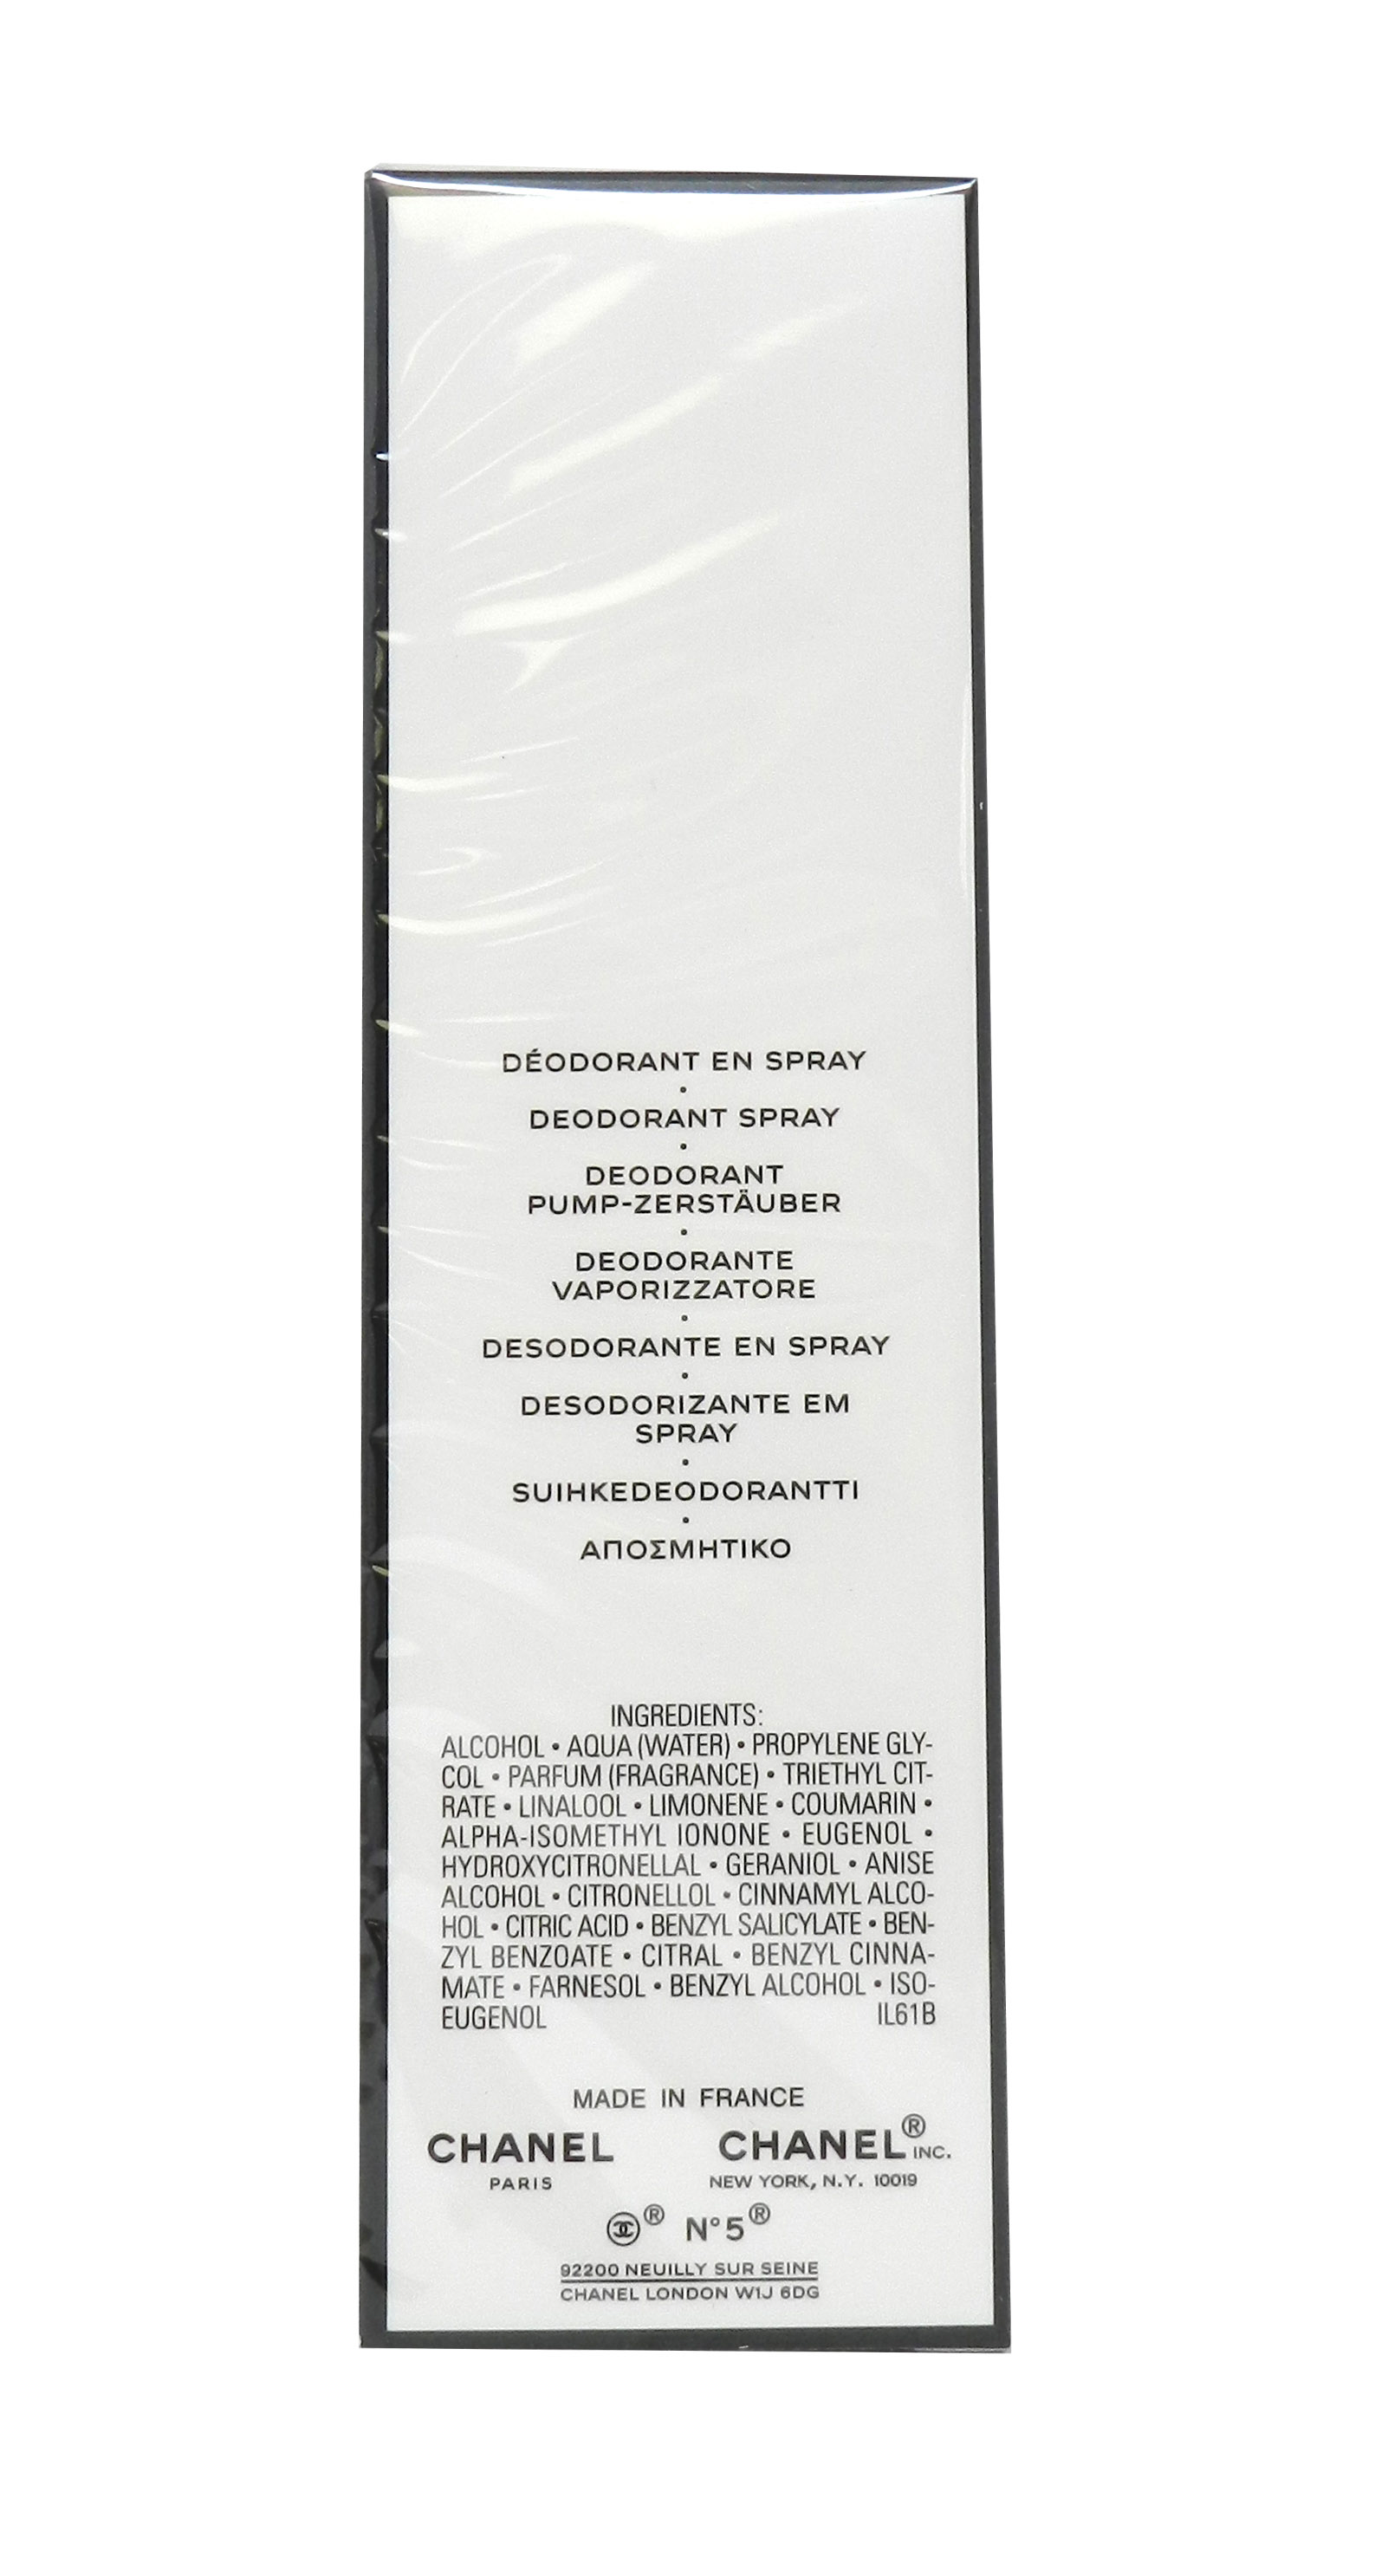 Chanel 5 Deodorant Spray 3.4 Ounces Walmart.com